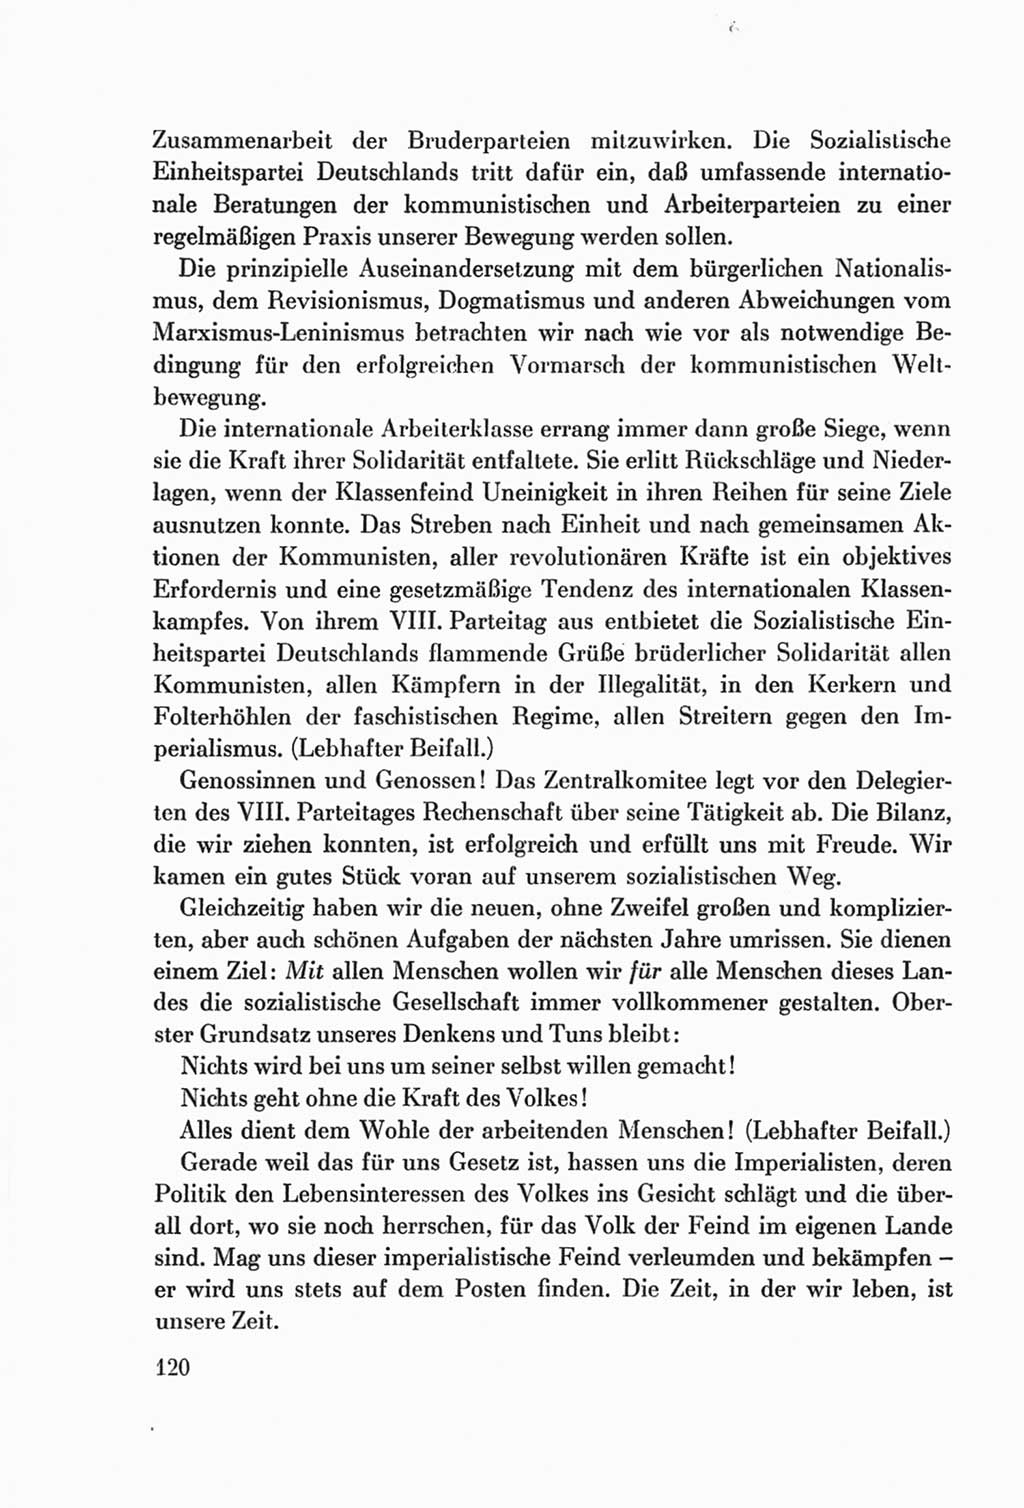 Protokoll der Verhandlungen des Ⅷ. Parteitages der Sozialistischen Einheitspartei Deutschlands (SED) [Deutsche Demokratische Republik (DDR)] 1971, Band 1, Seite 120 (Prot. Verh. Ⅷ. PT SED DDR 1971, Bd. 1, S. 120)